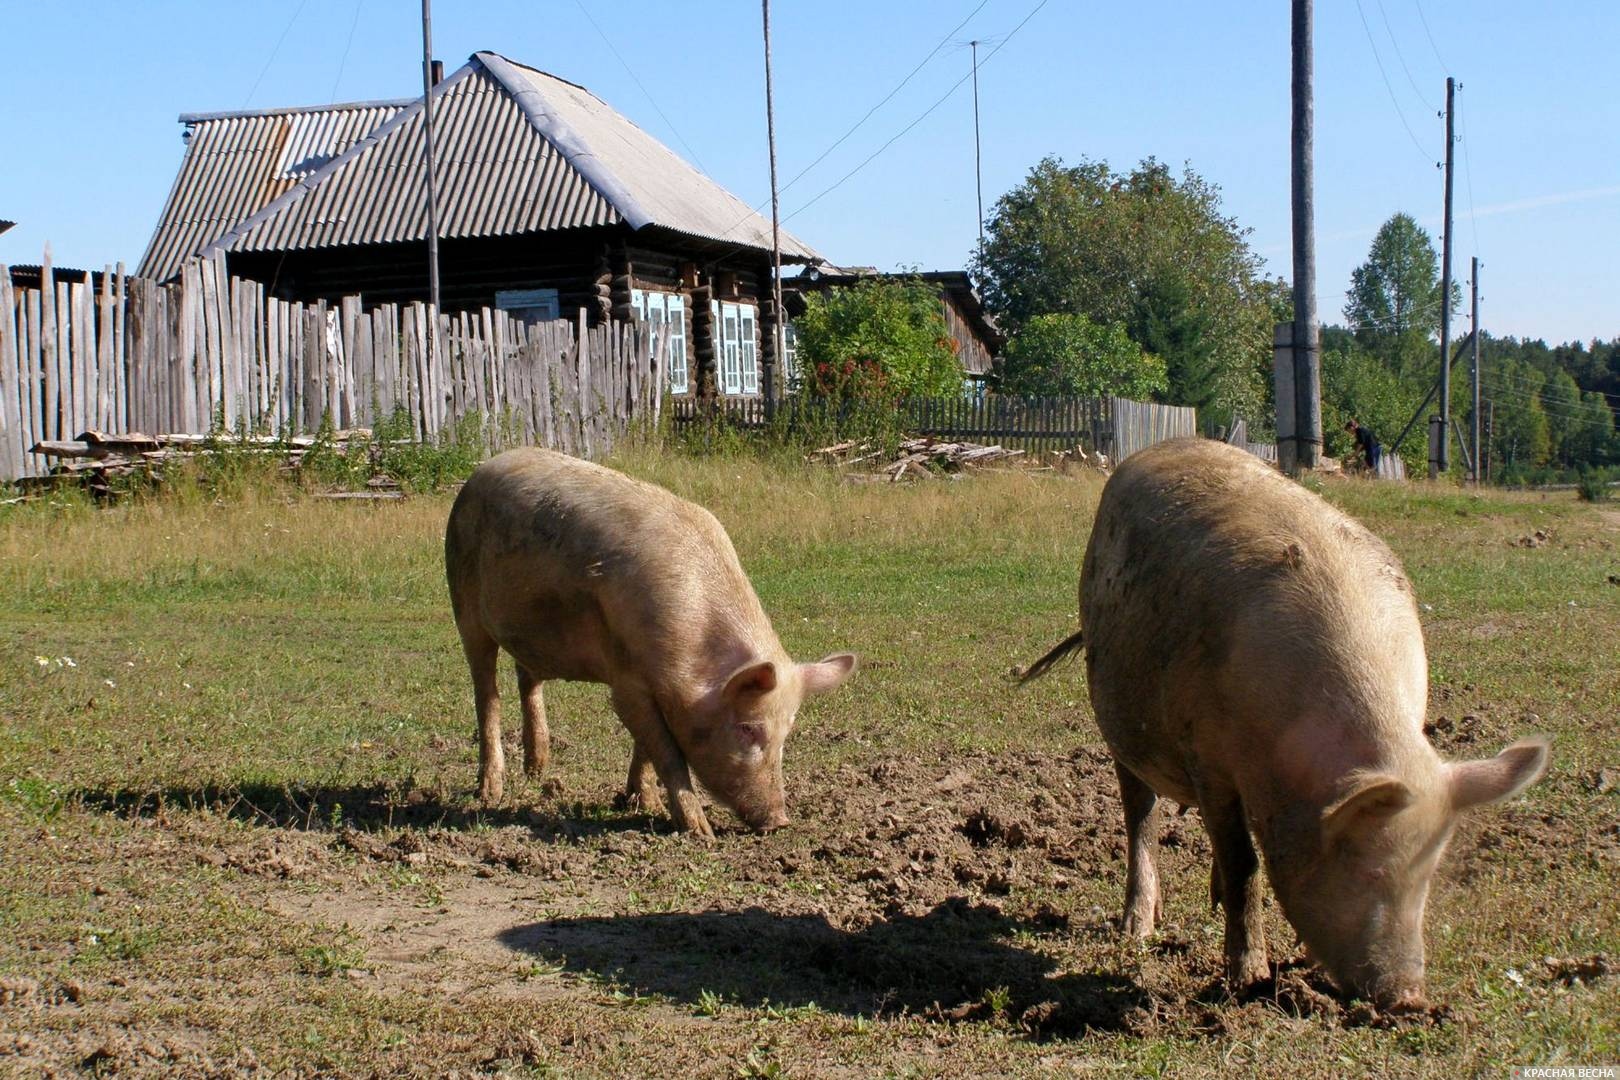 Свиньи в деревне на высшем уровне благополучия — свободном выпасе